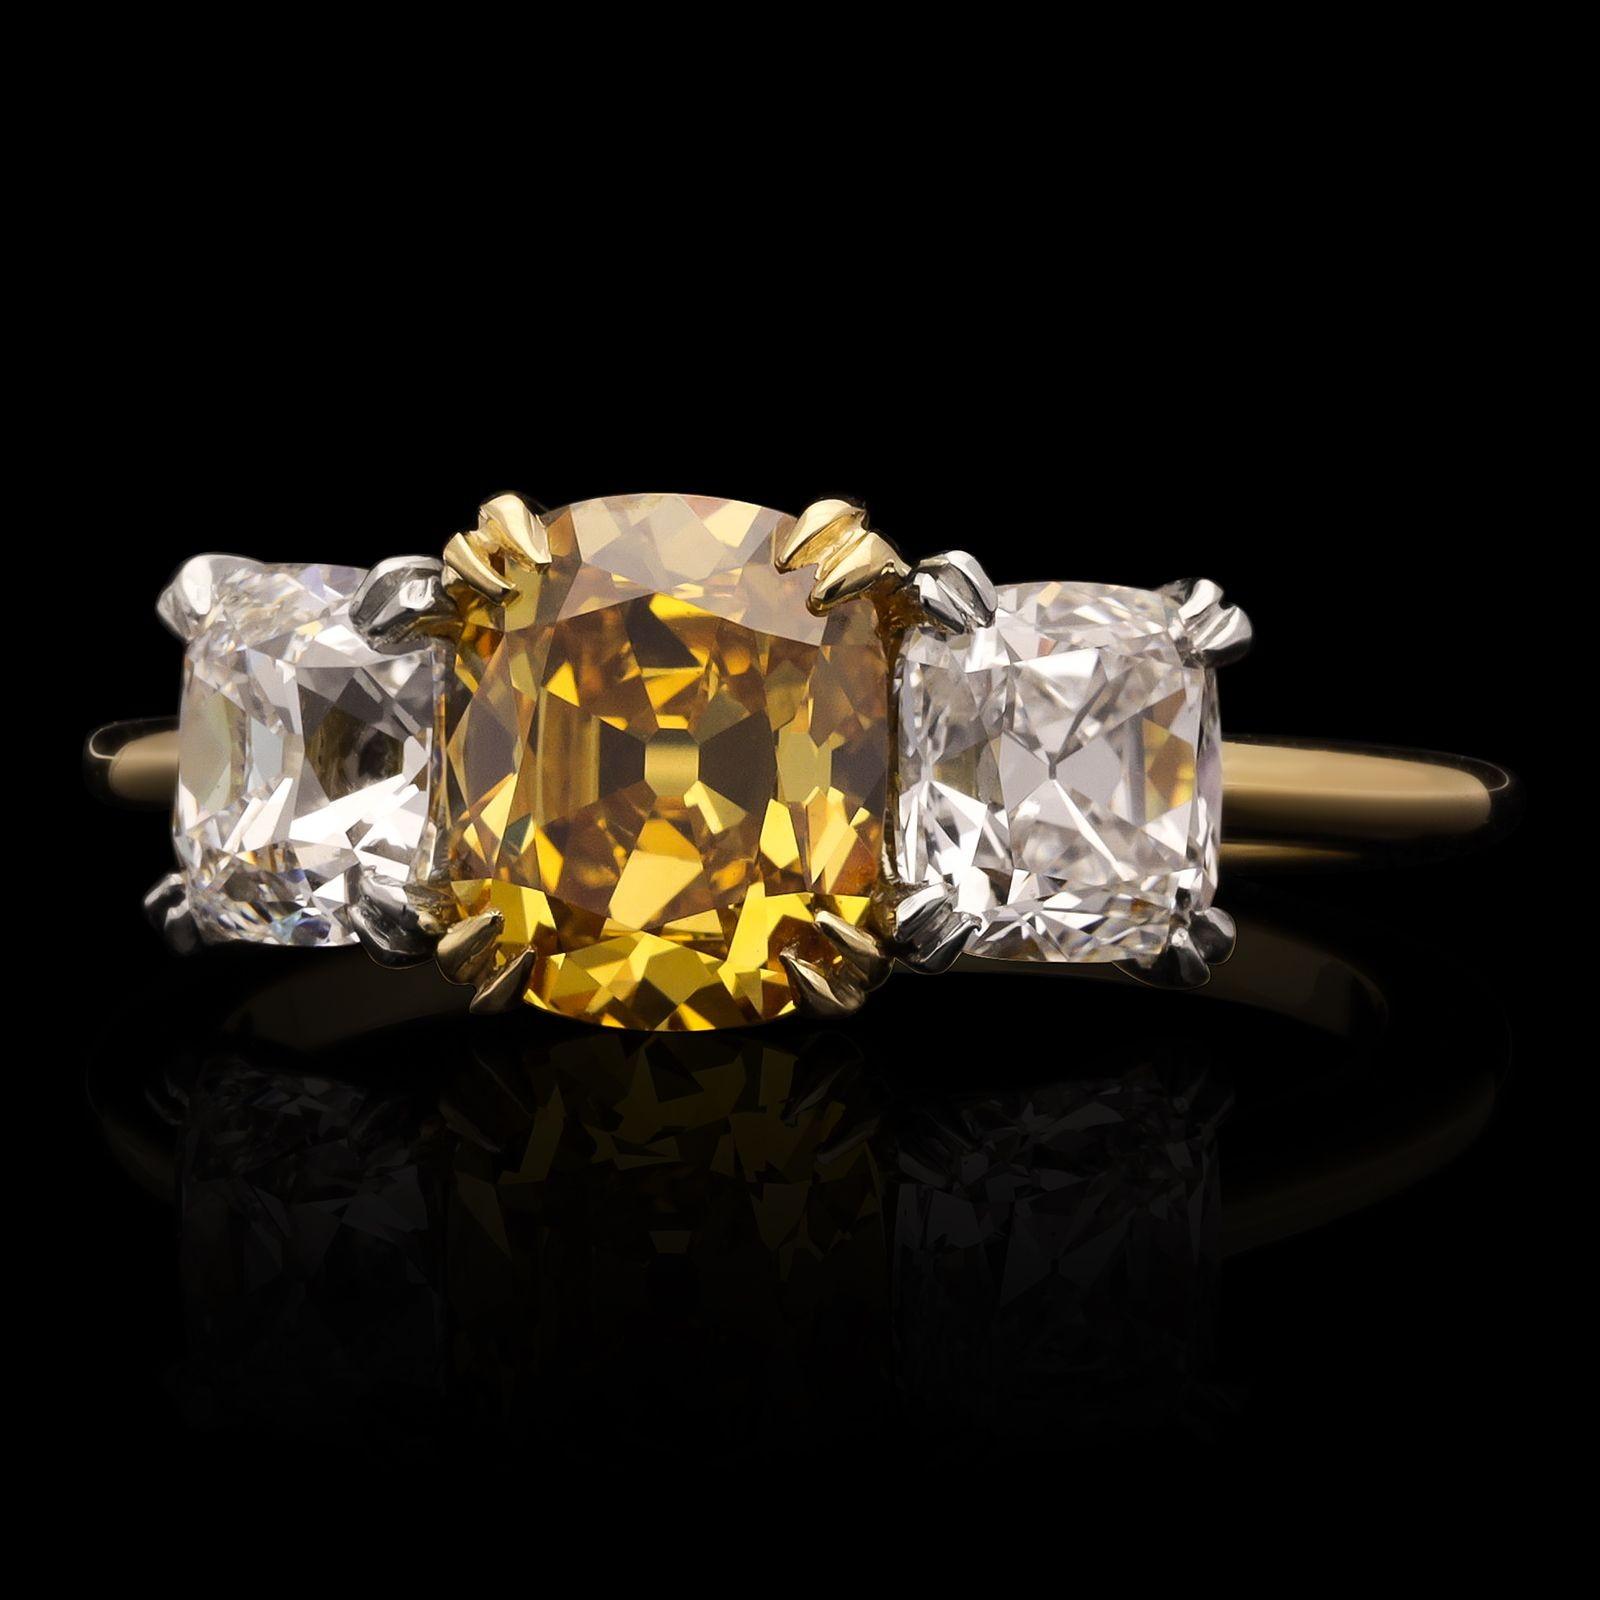 Ein wunderschöner Ring mit drei Steinen von Hancocks, in dessen Mittelpunkt ein wunderschöner Diamant im Brillantschliff aus alter Mine mit einem Gewicht von 1,42 ct und einer Farbe von Fancy Deep Orange Yellow und einer Reinheit von VS2 steht. Der